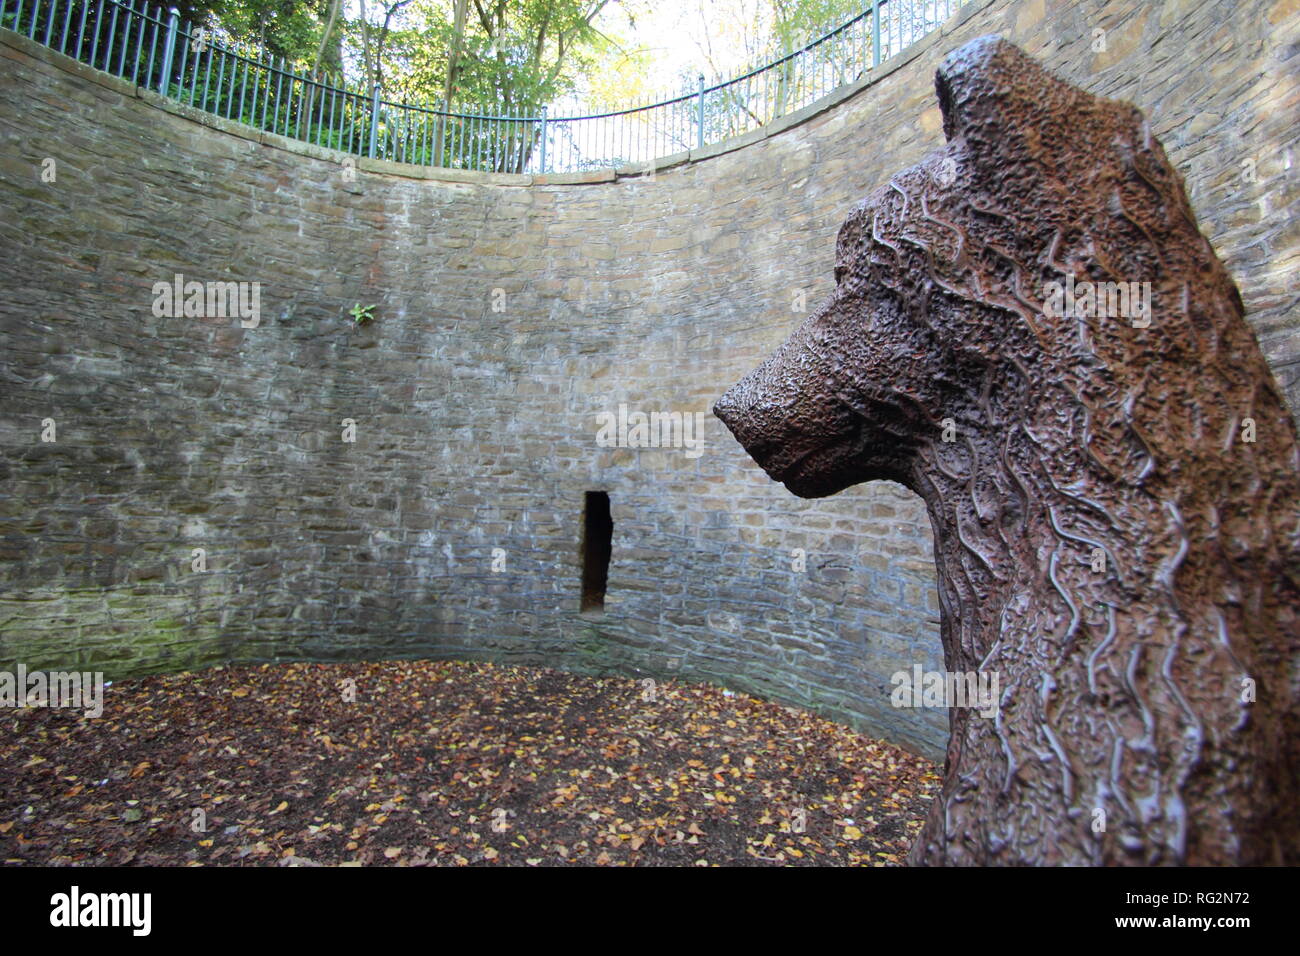 Bärengraben mit Bär Statue an der Sheffield Botanischen Gärten, Yorkshire, England, UK. Angeblich besten erhaltene Beispiel einer Bär Grube in Großbritannien zu werden. Stockfoto